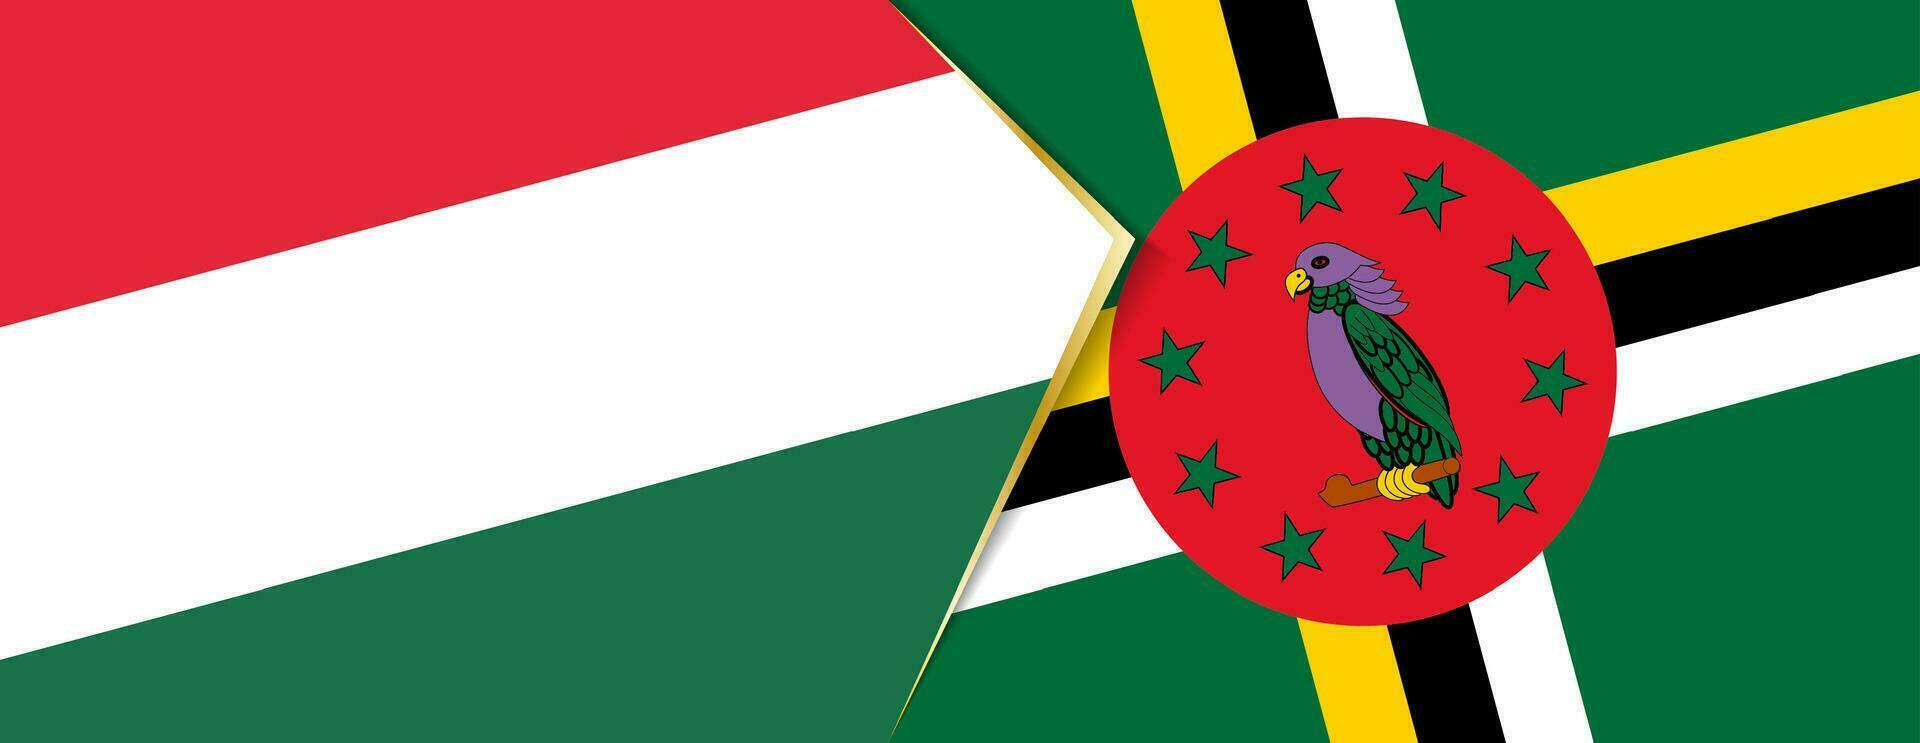 Hungría y dominica banderas, dos vector banderas